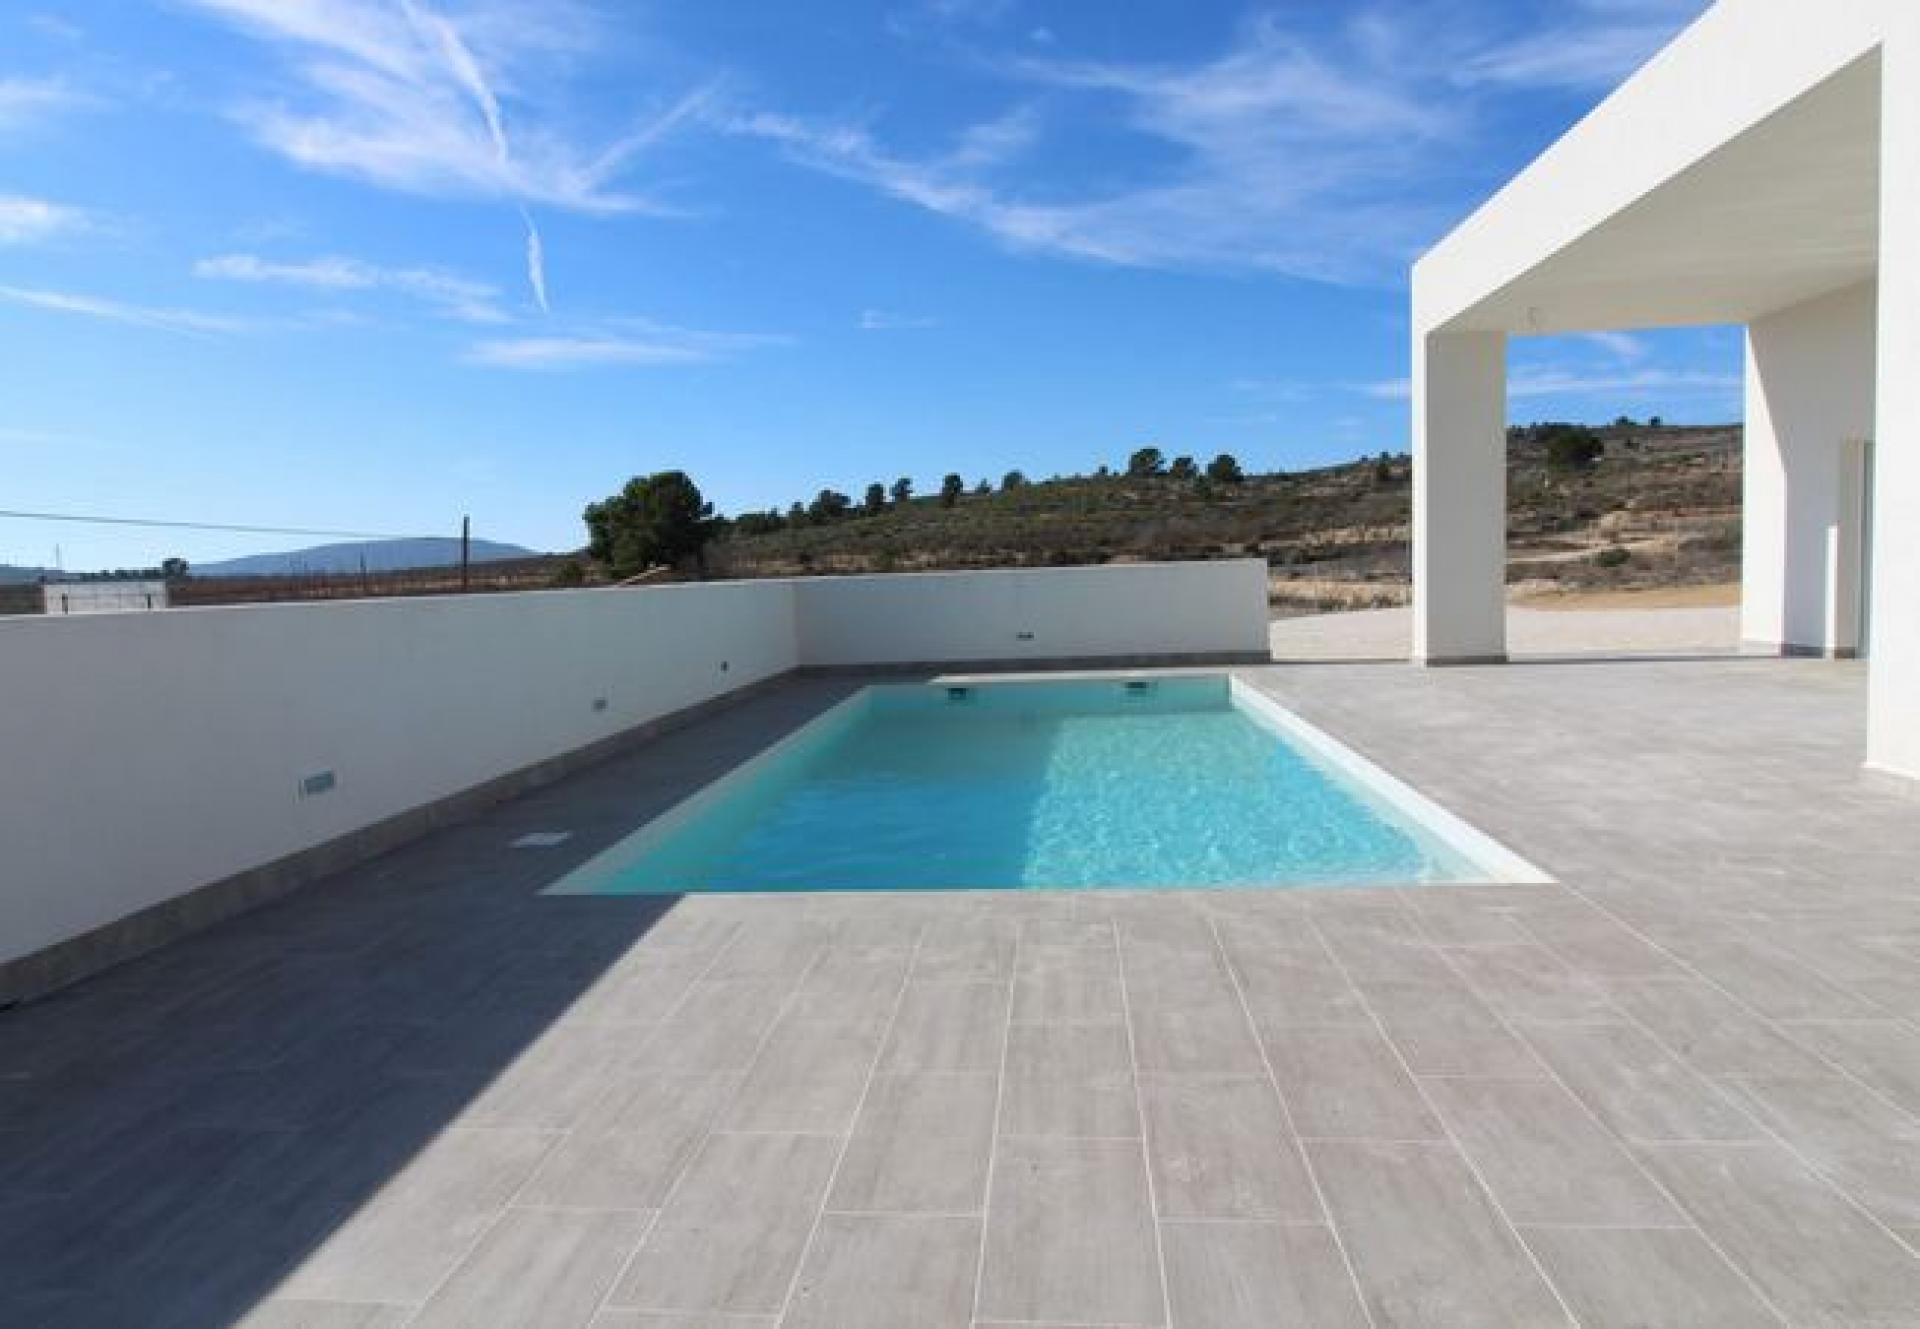 Huis - Villa te bouwen Costa Blanca - Spanje in Medvilla Spanje